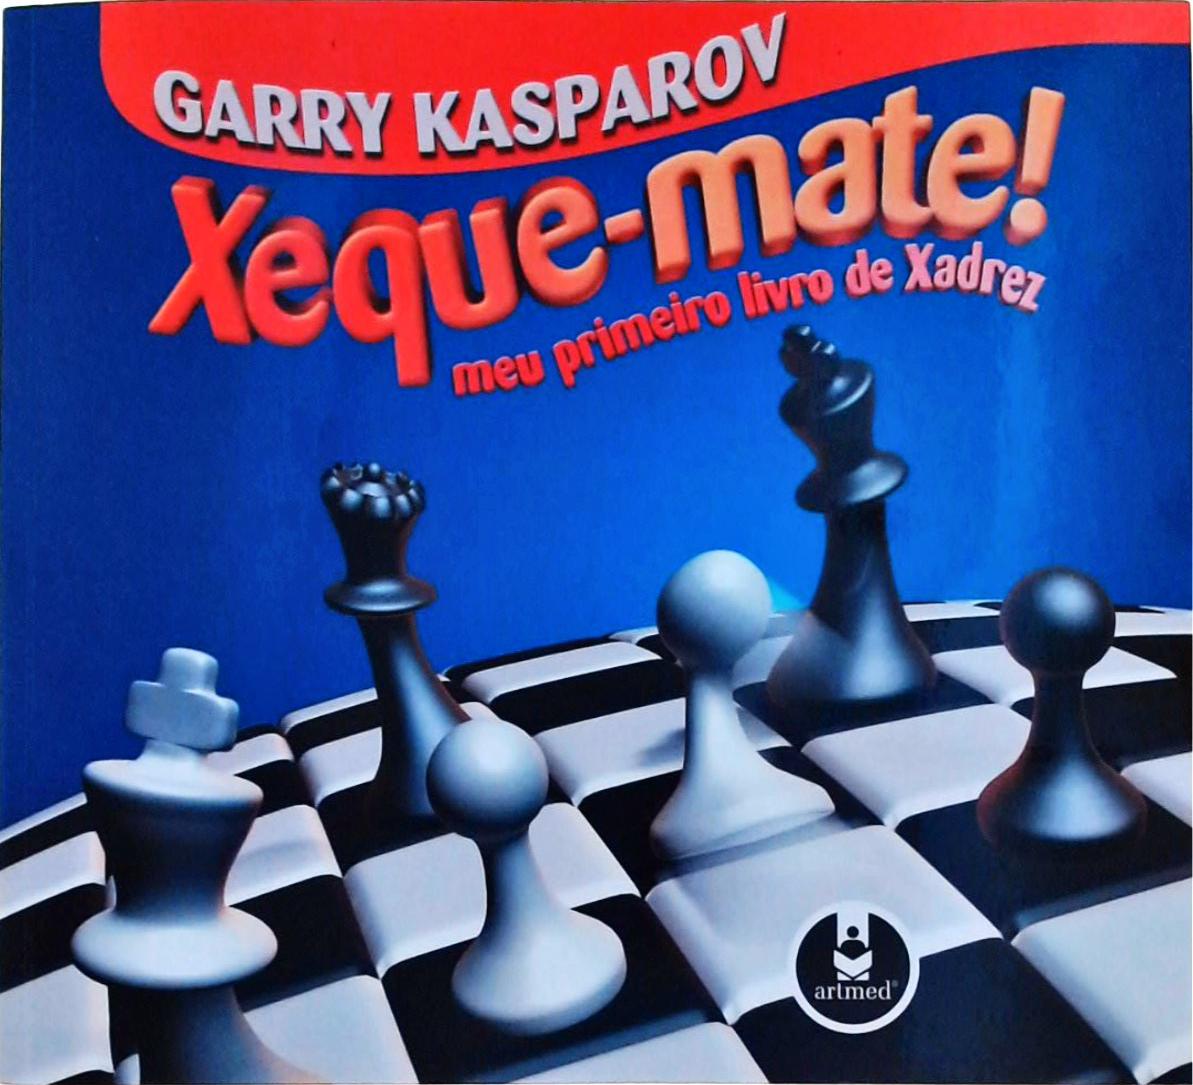 Xeque-Mate - Garry Kasparov - Seboterapia - Livros